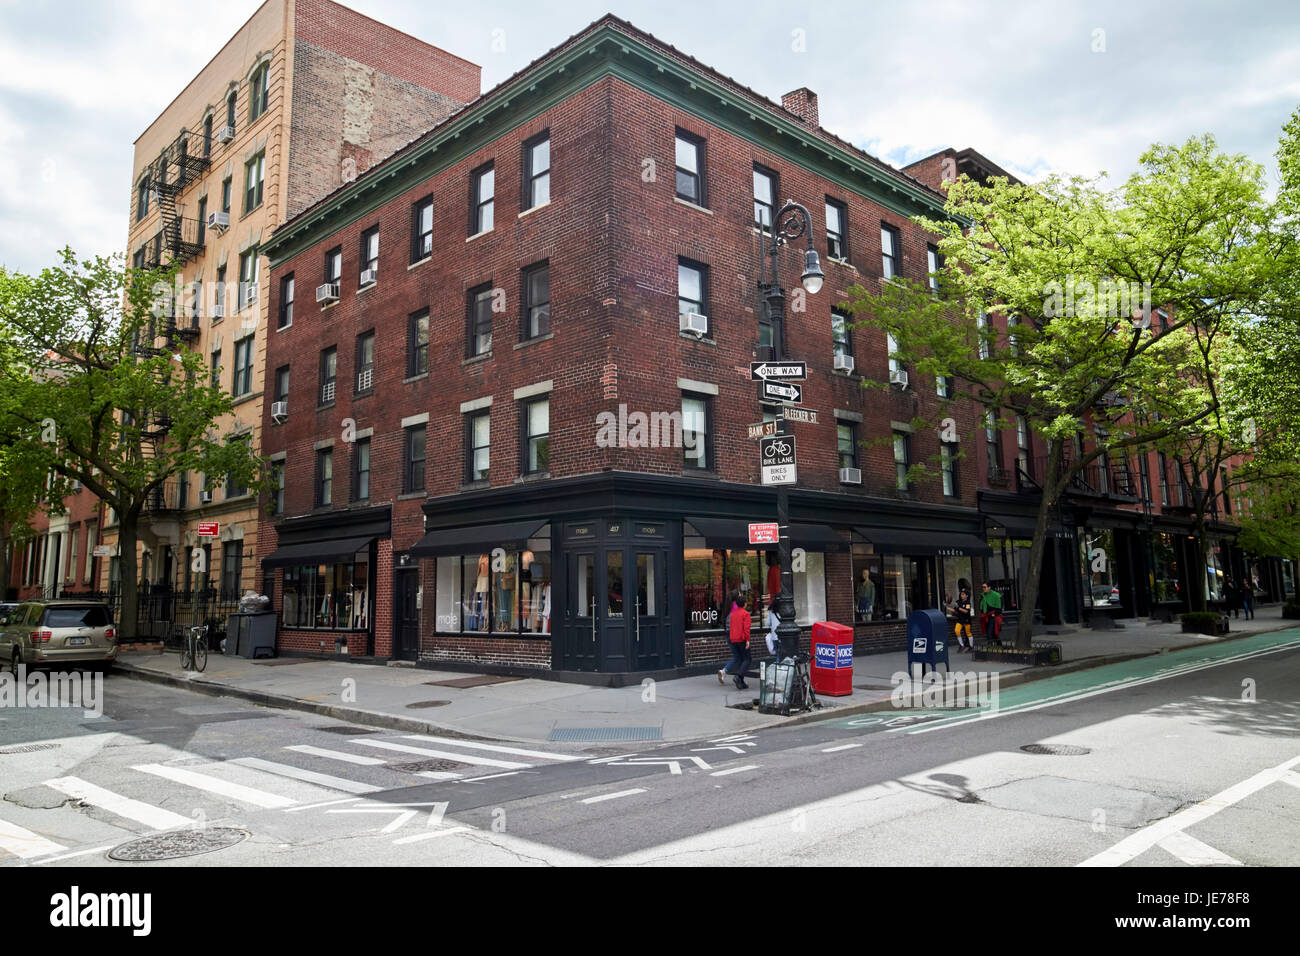 4 étages en brique rouge bâtiment résidentiel à l'angle de Bleeker Street et bank st Greenwich village New York City USA Banque D'Images